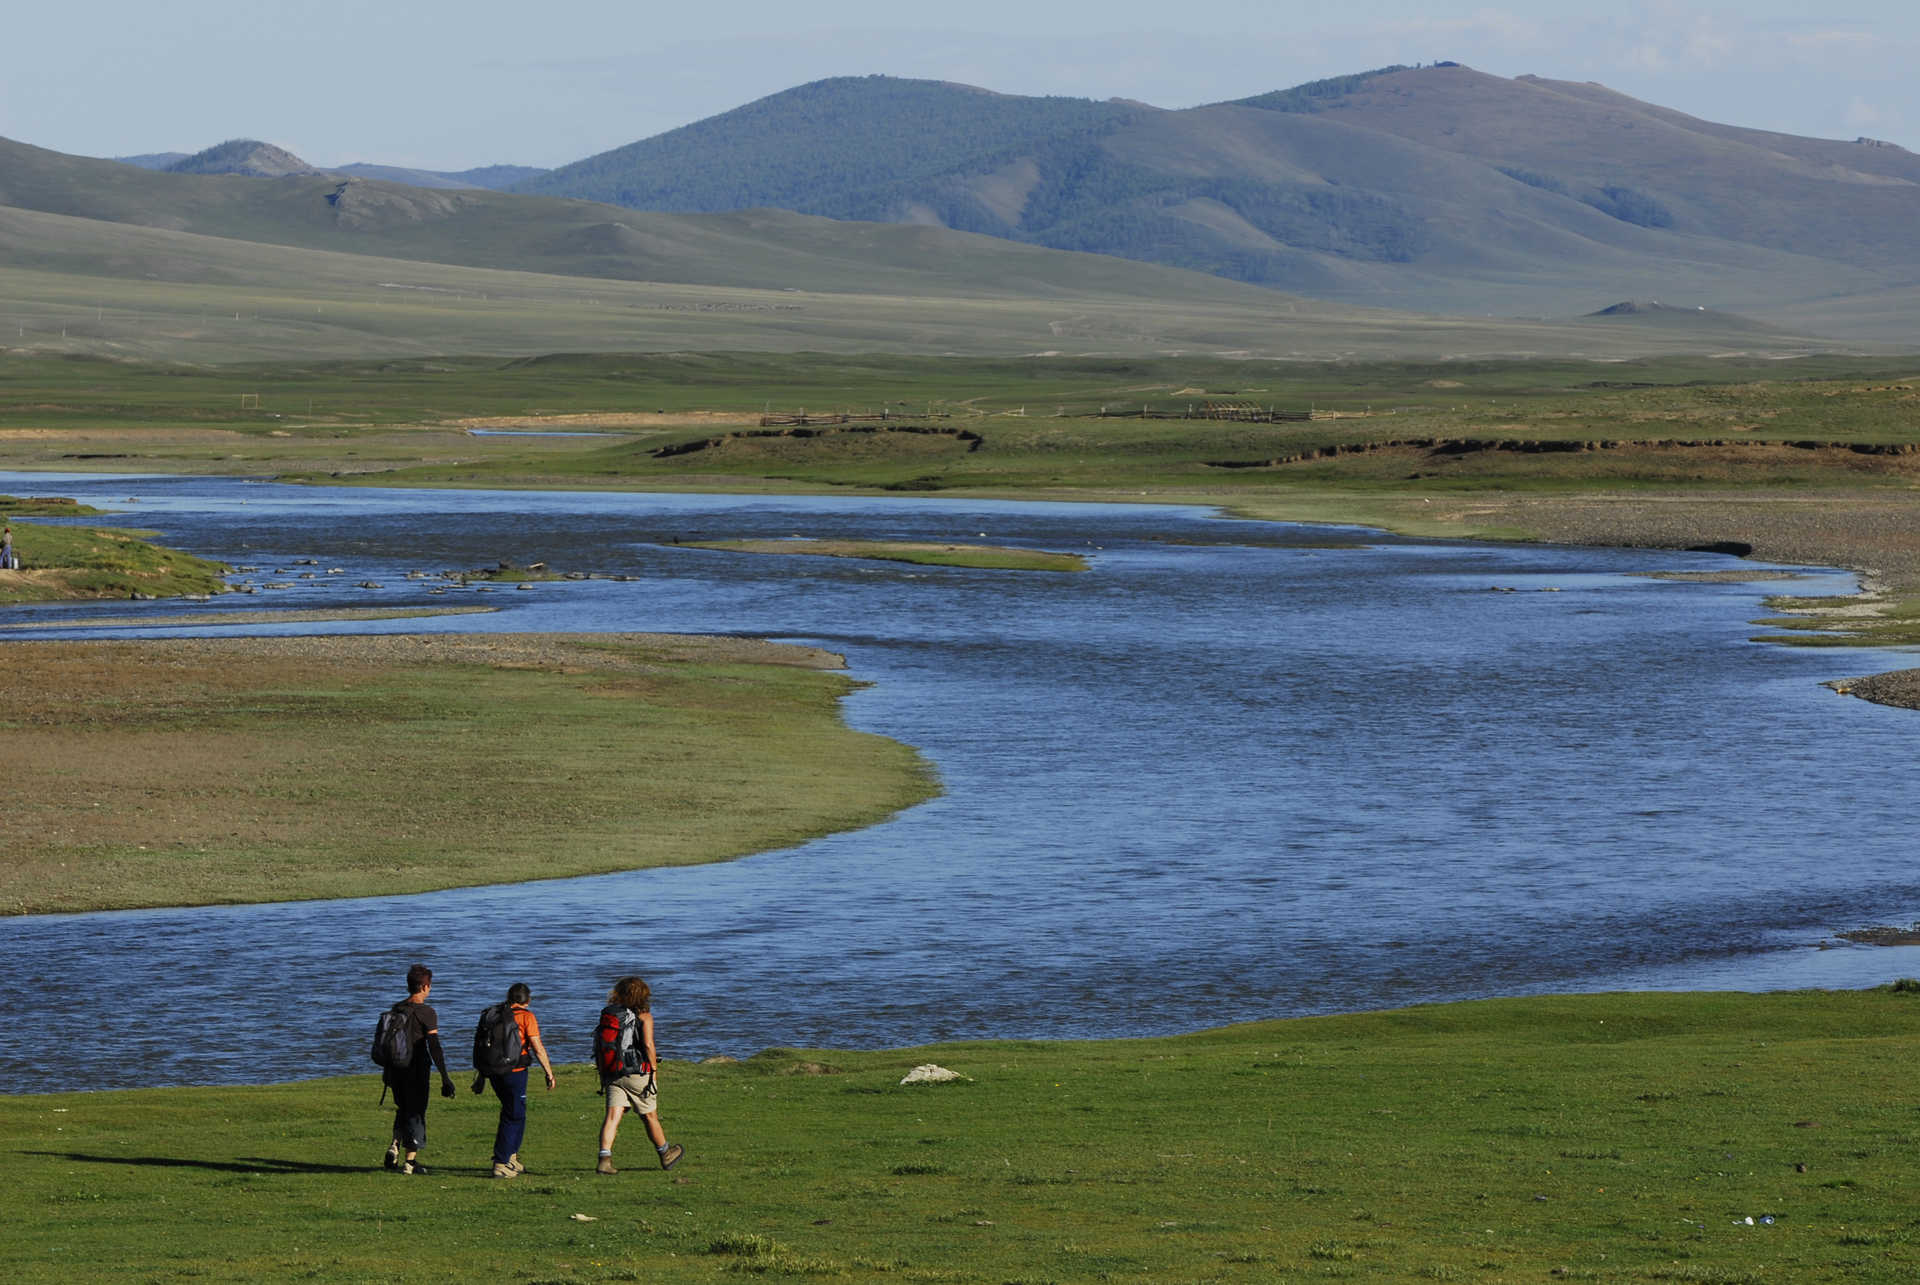 rando trekking Mongolie, Arkhangai, parc des 8 lacs